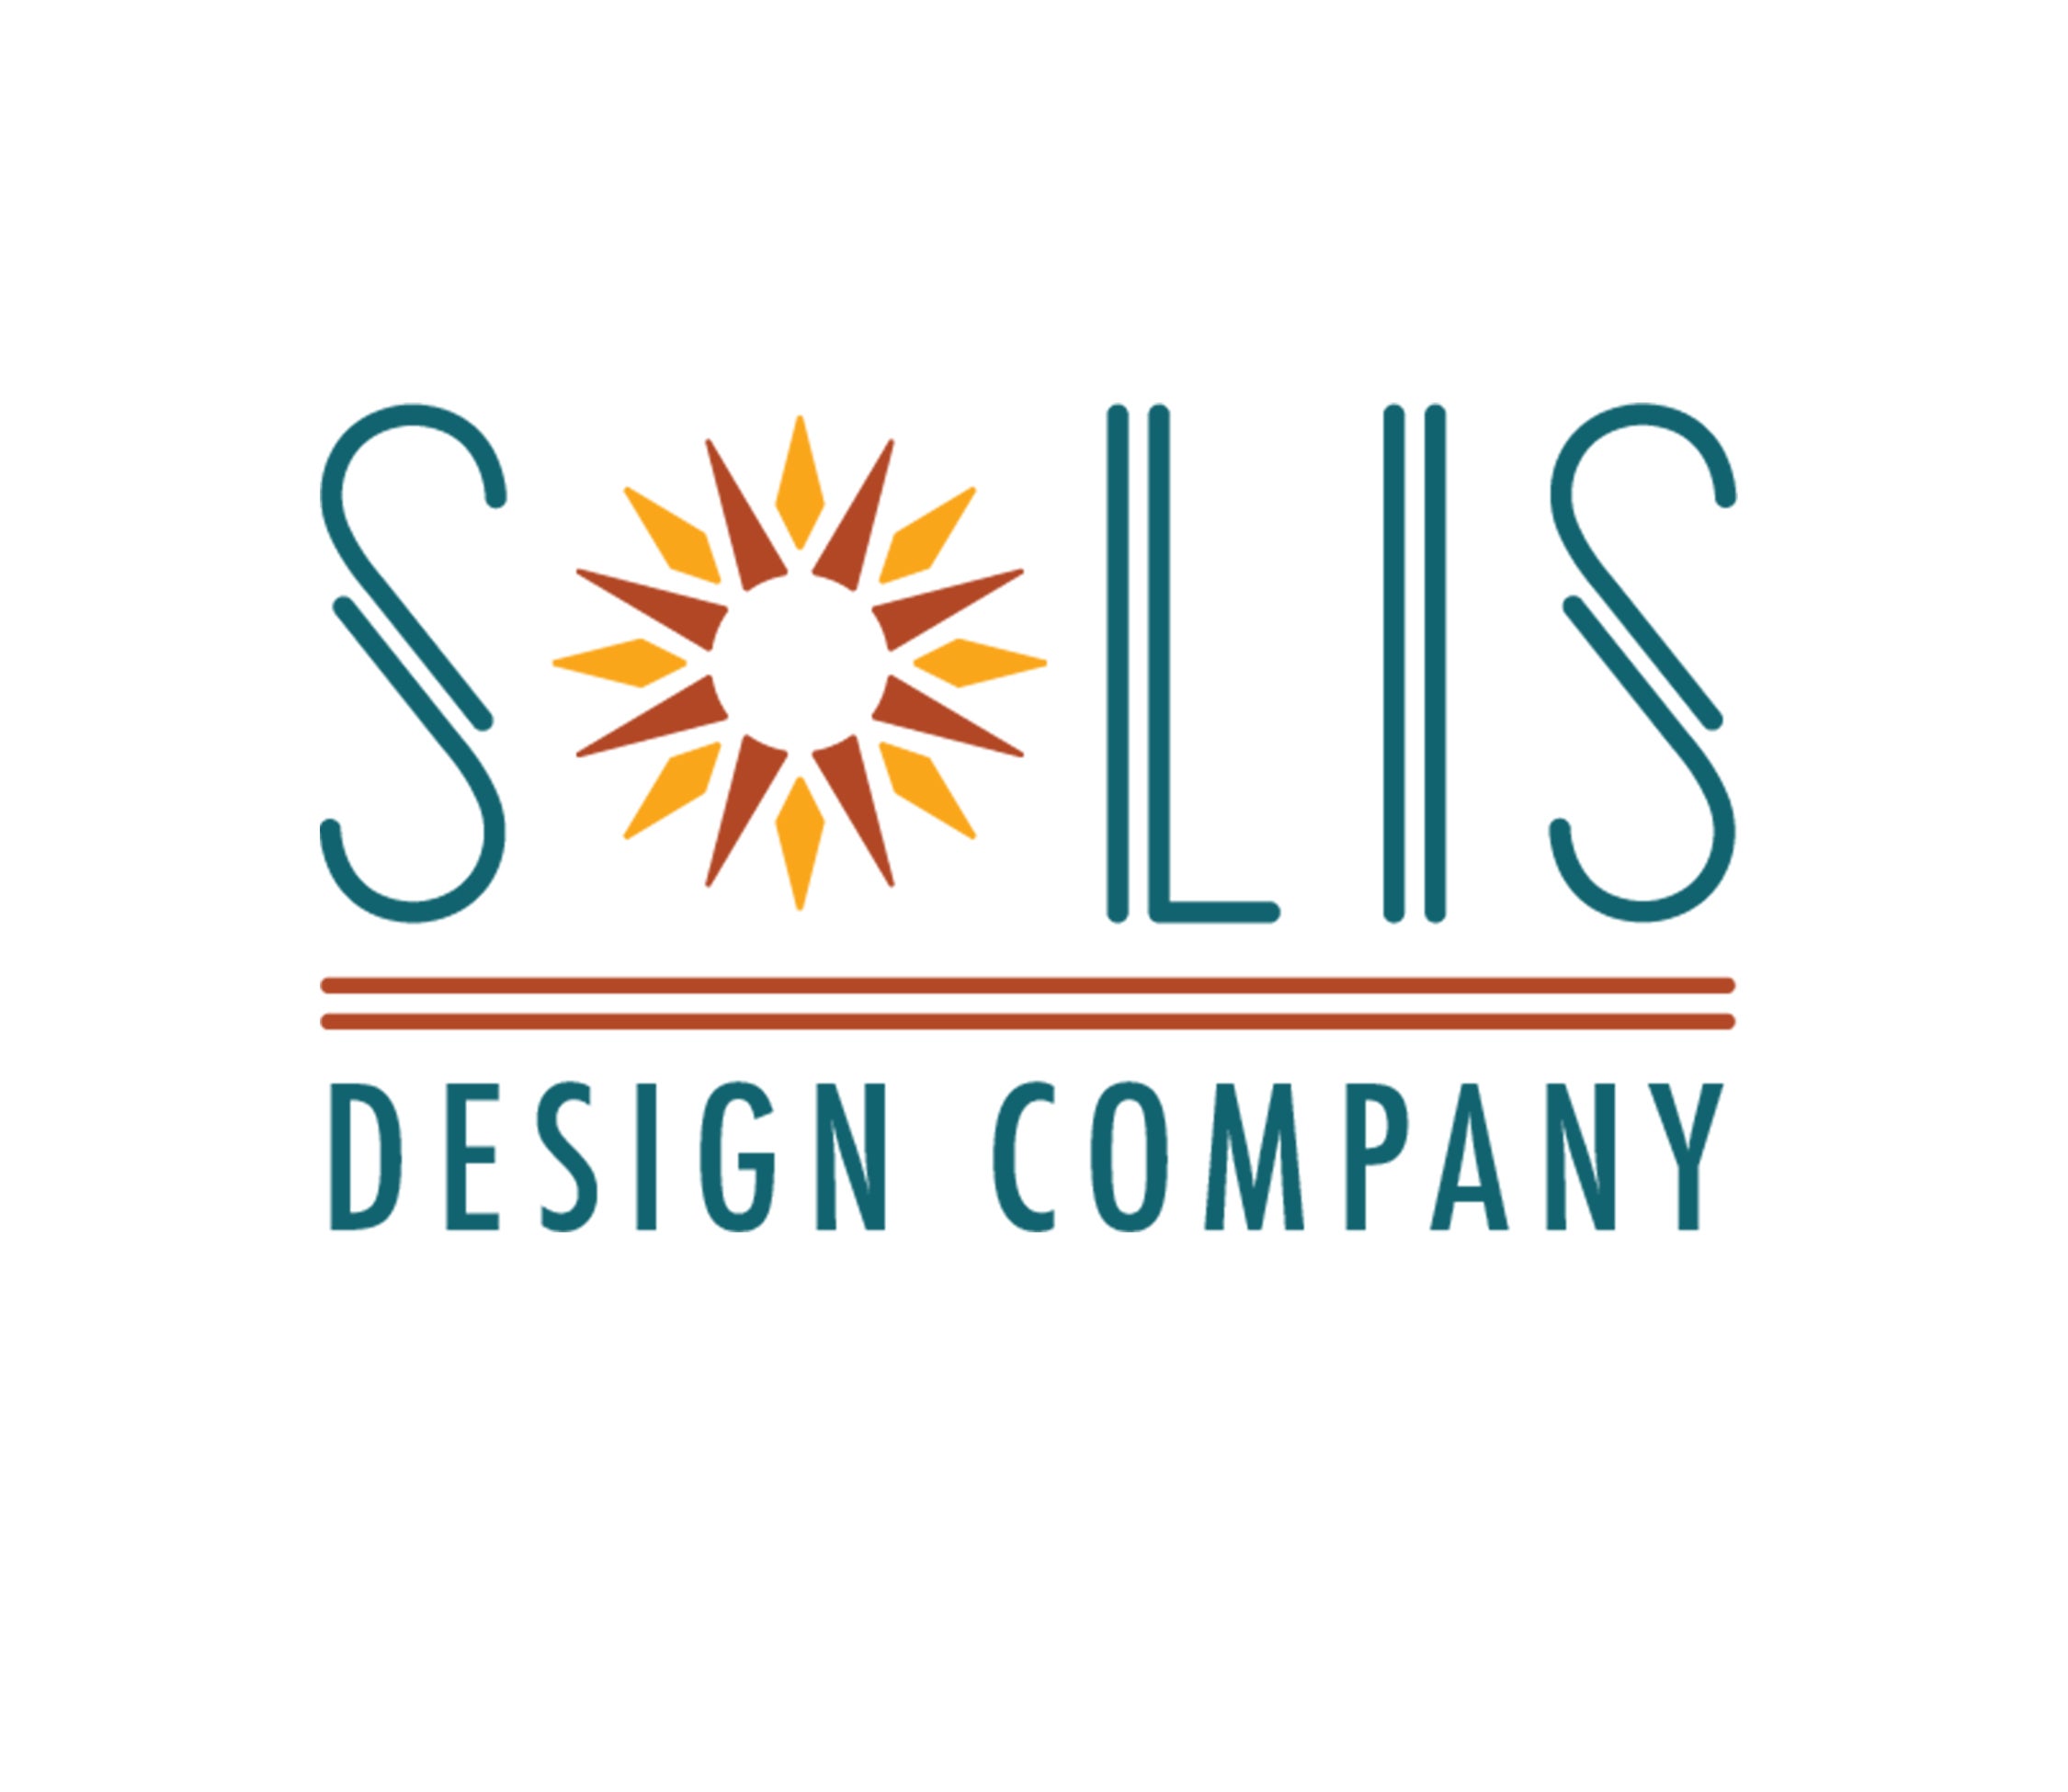 Home | Solis Design Company